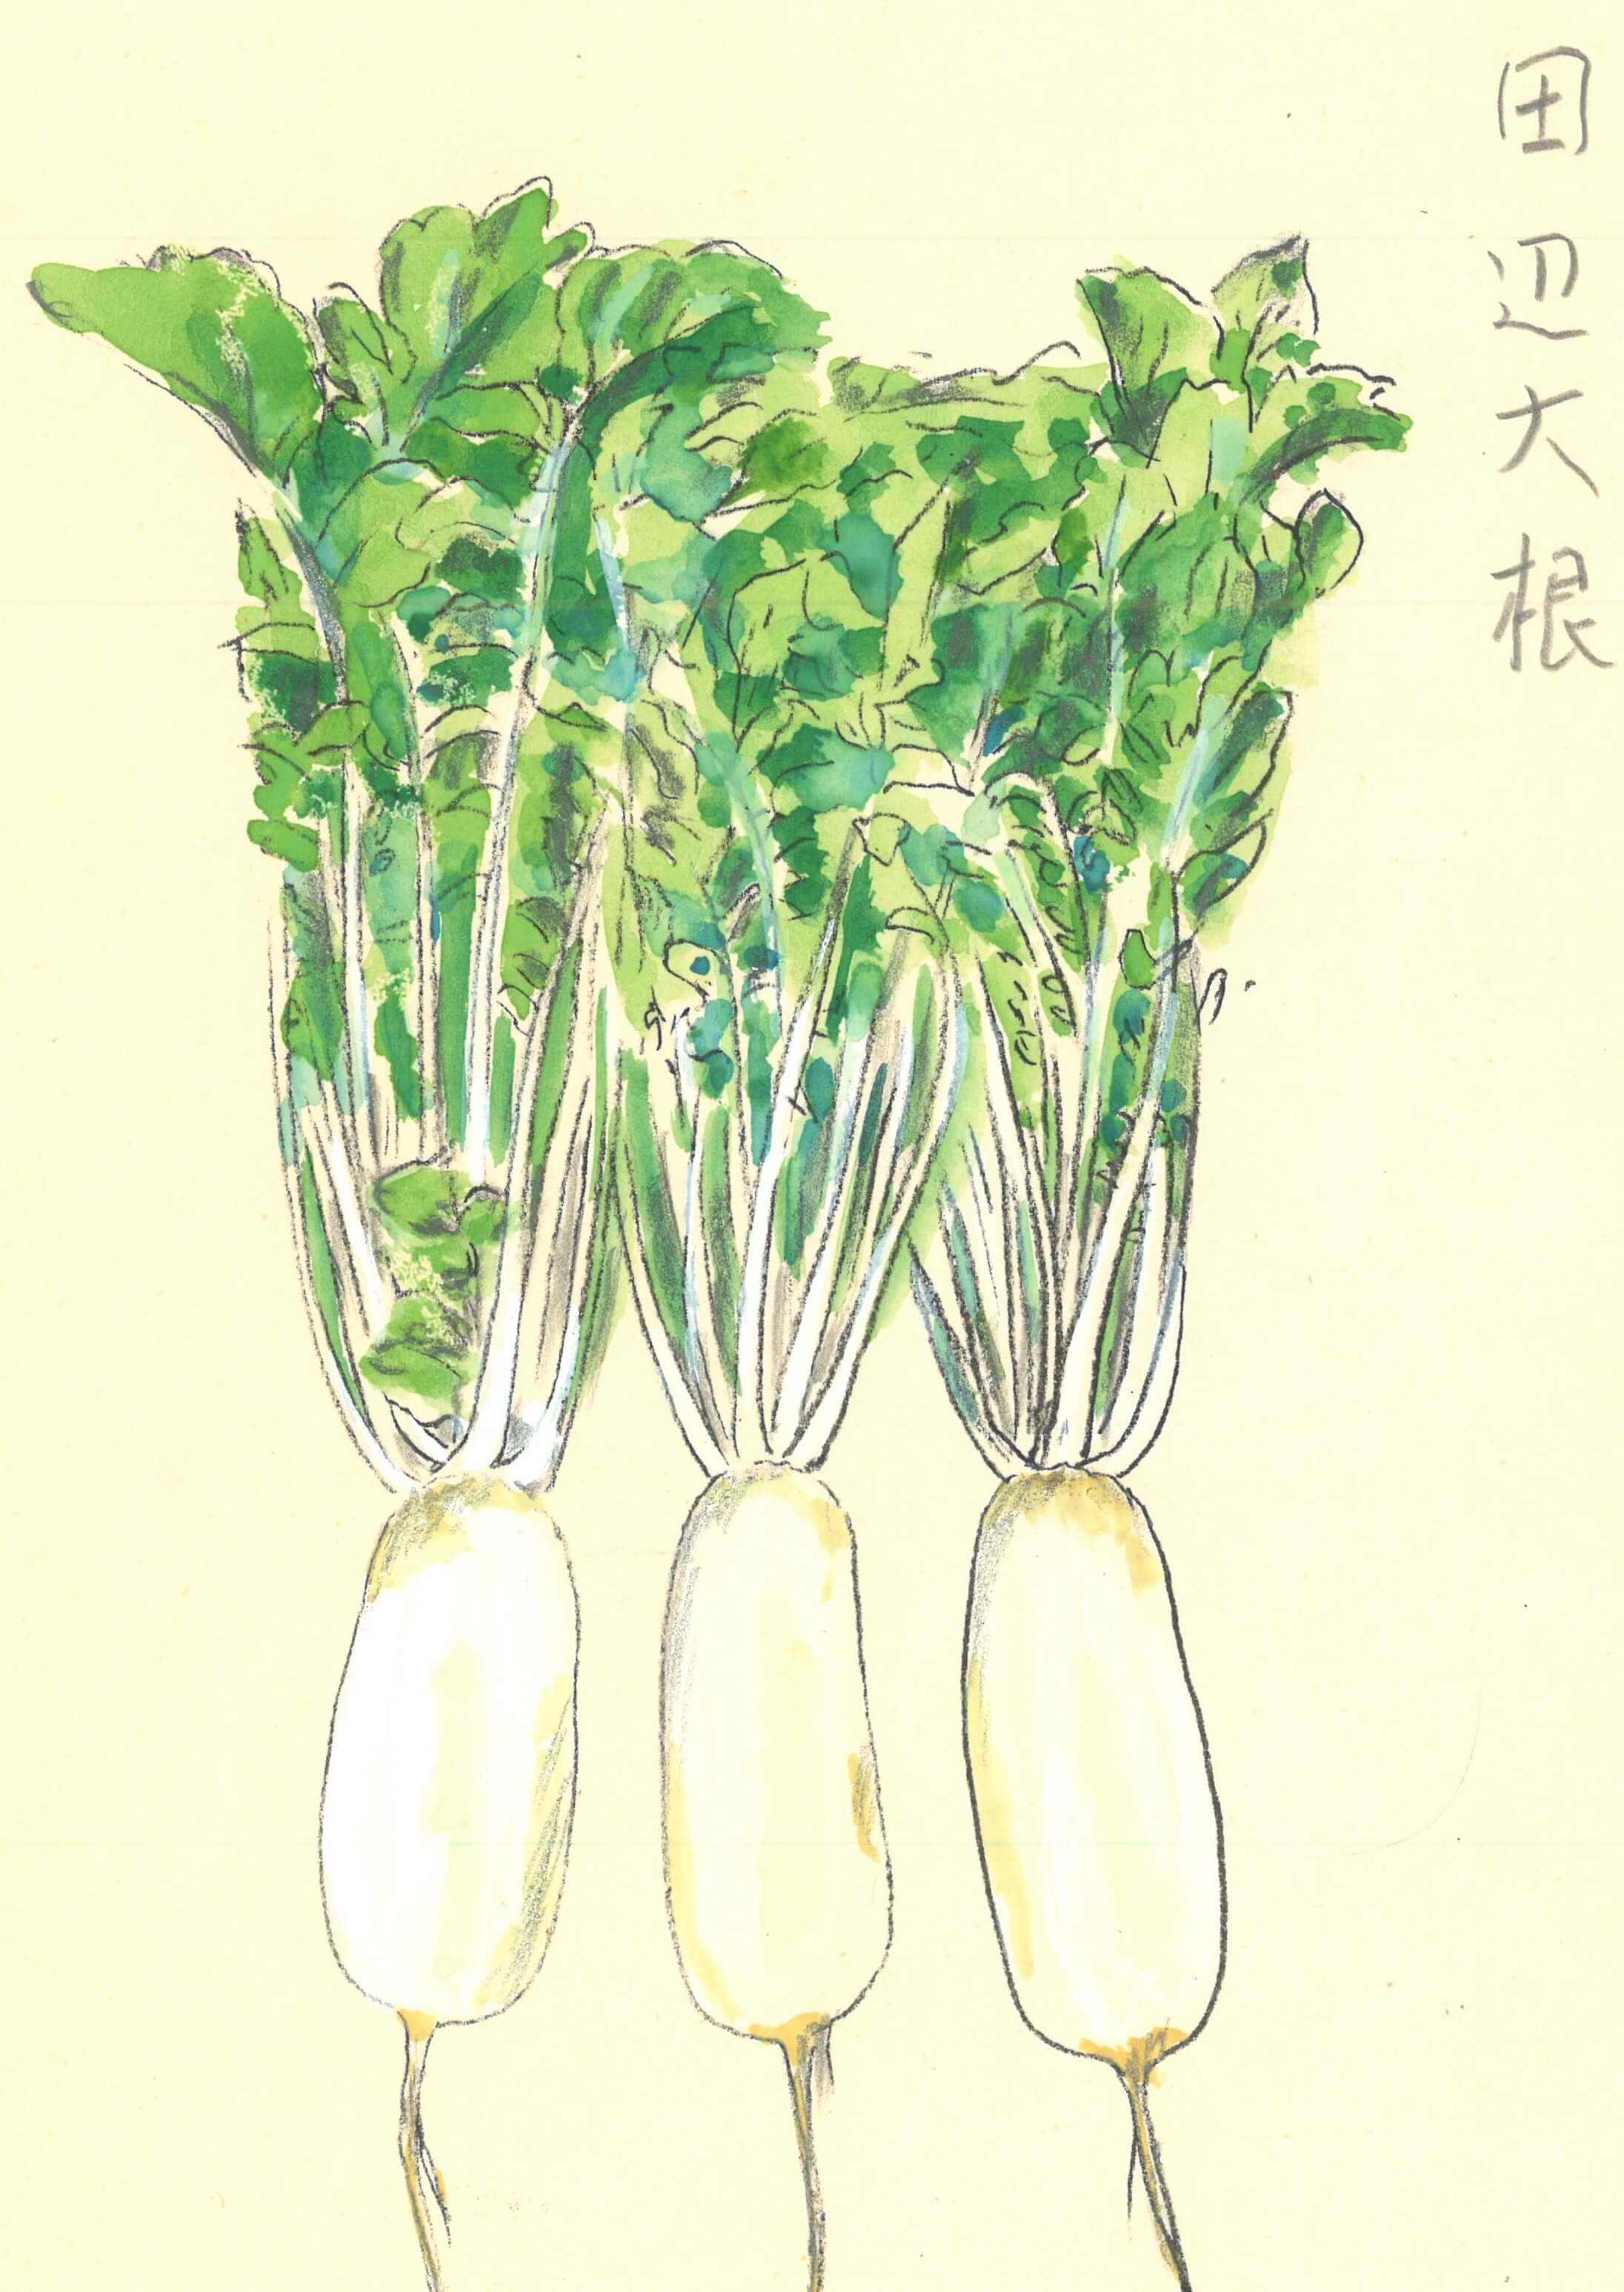 野菜の旬を楽しむ 浪速割烹㐂川 きがわ 創業者上野修三 素適なセカンドライフ 老人ホーム探しのお役立ち情報